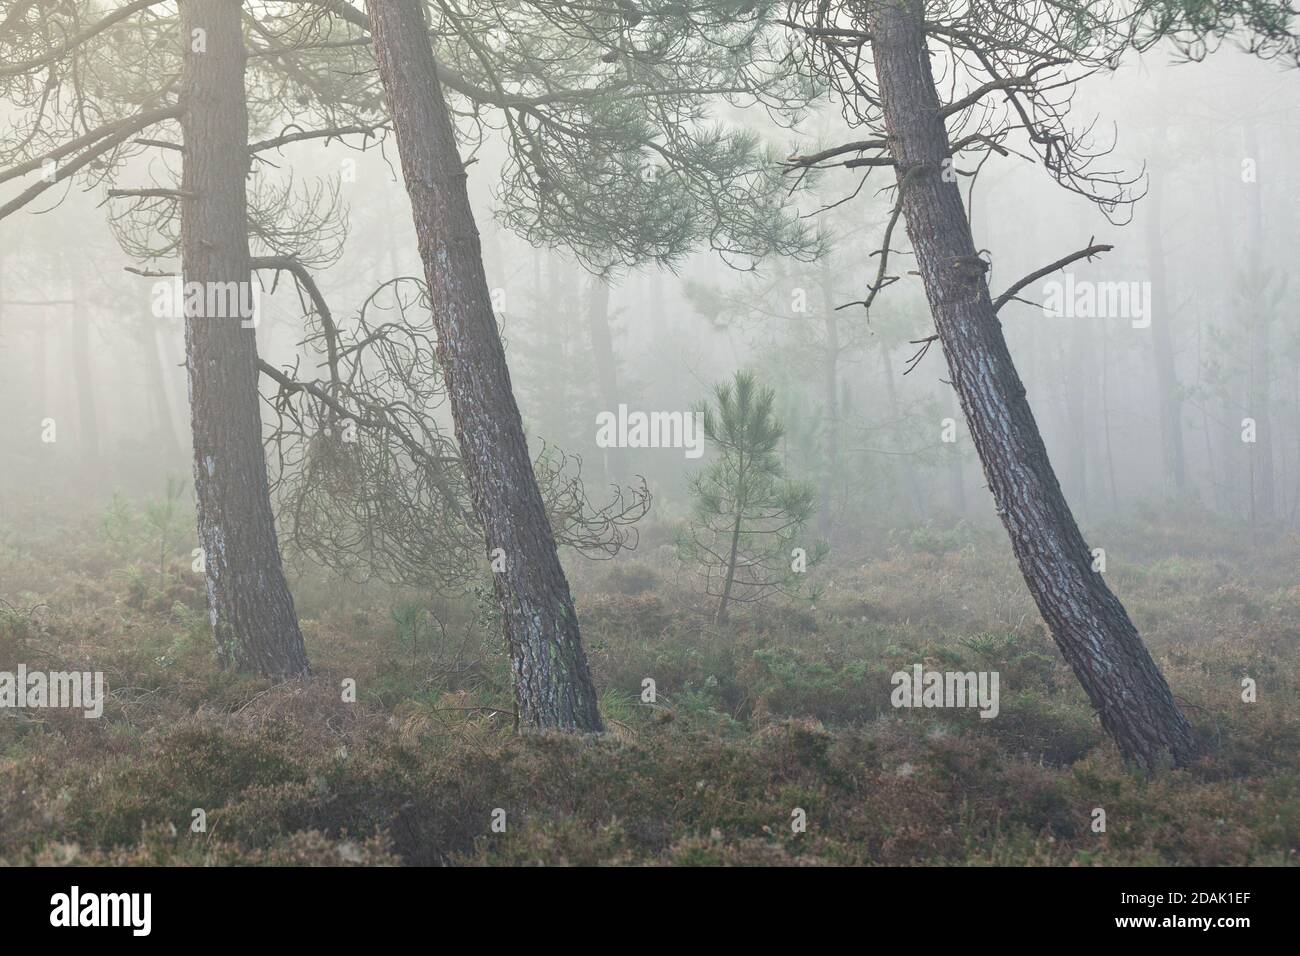 Der Kiefernwald in der Nähe des Cap Erquy im herbstlichen Morgennebel. Bretagne, Nordküste. Frankreich. Stock Photo